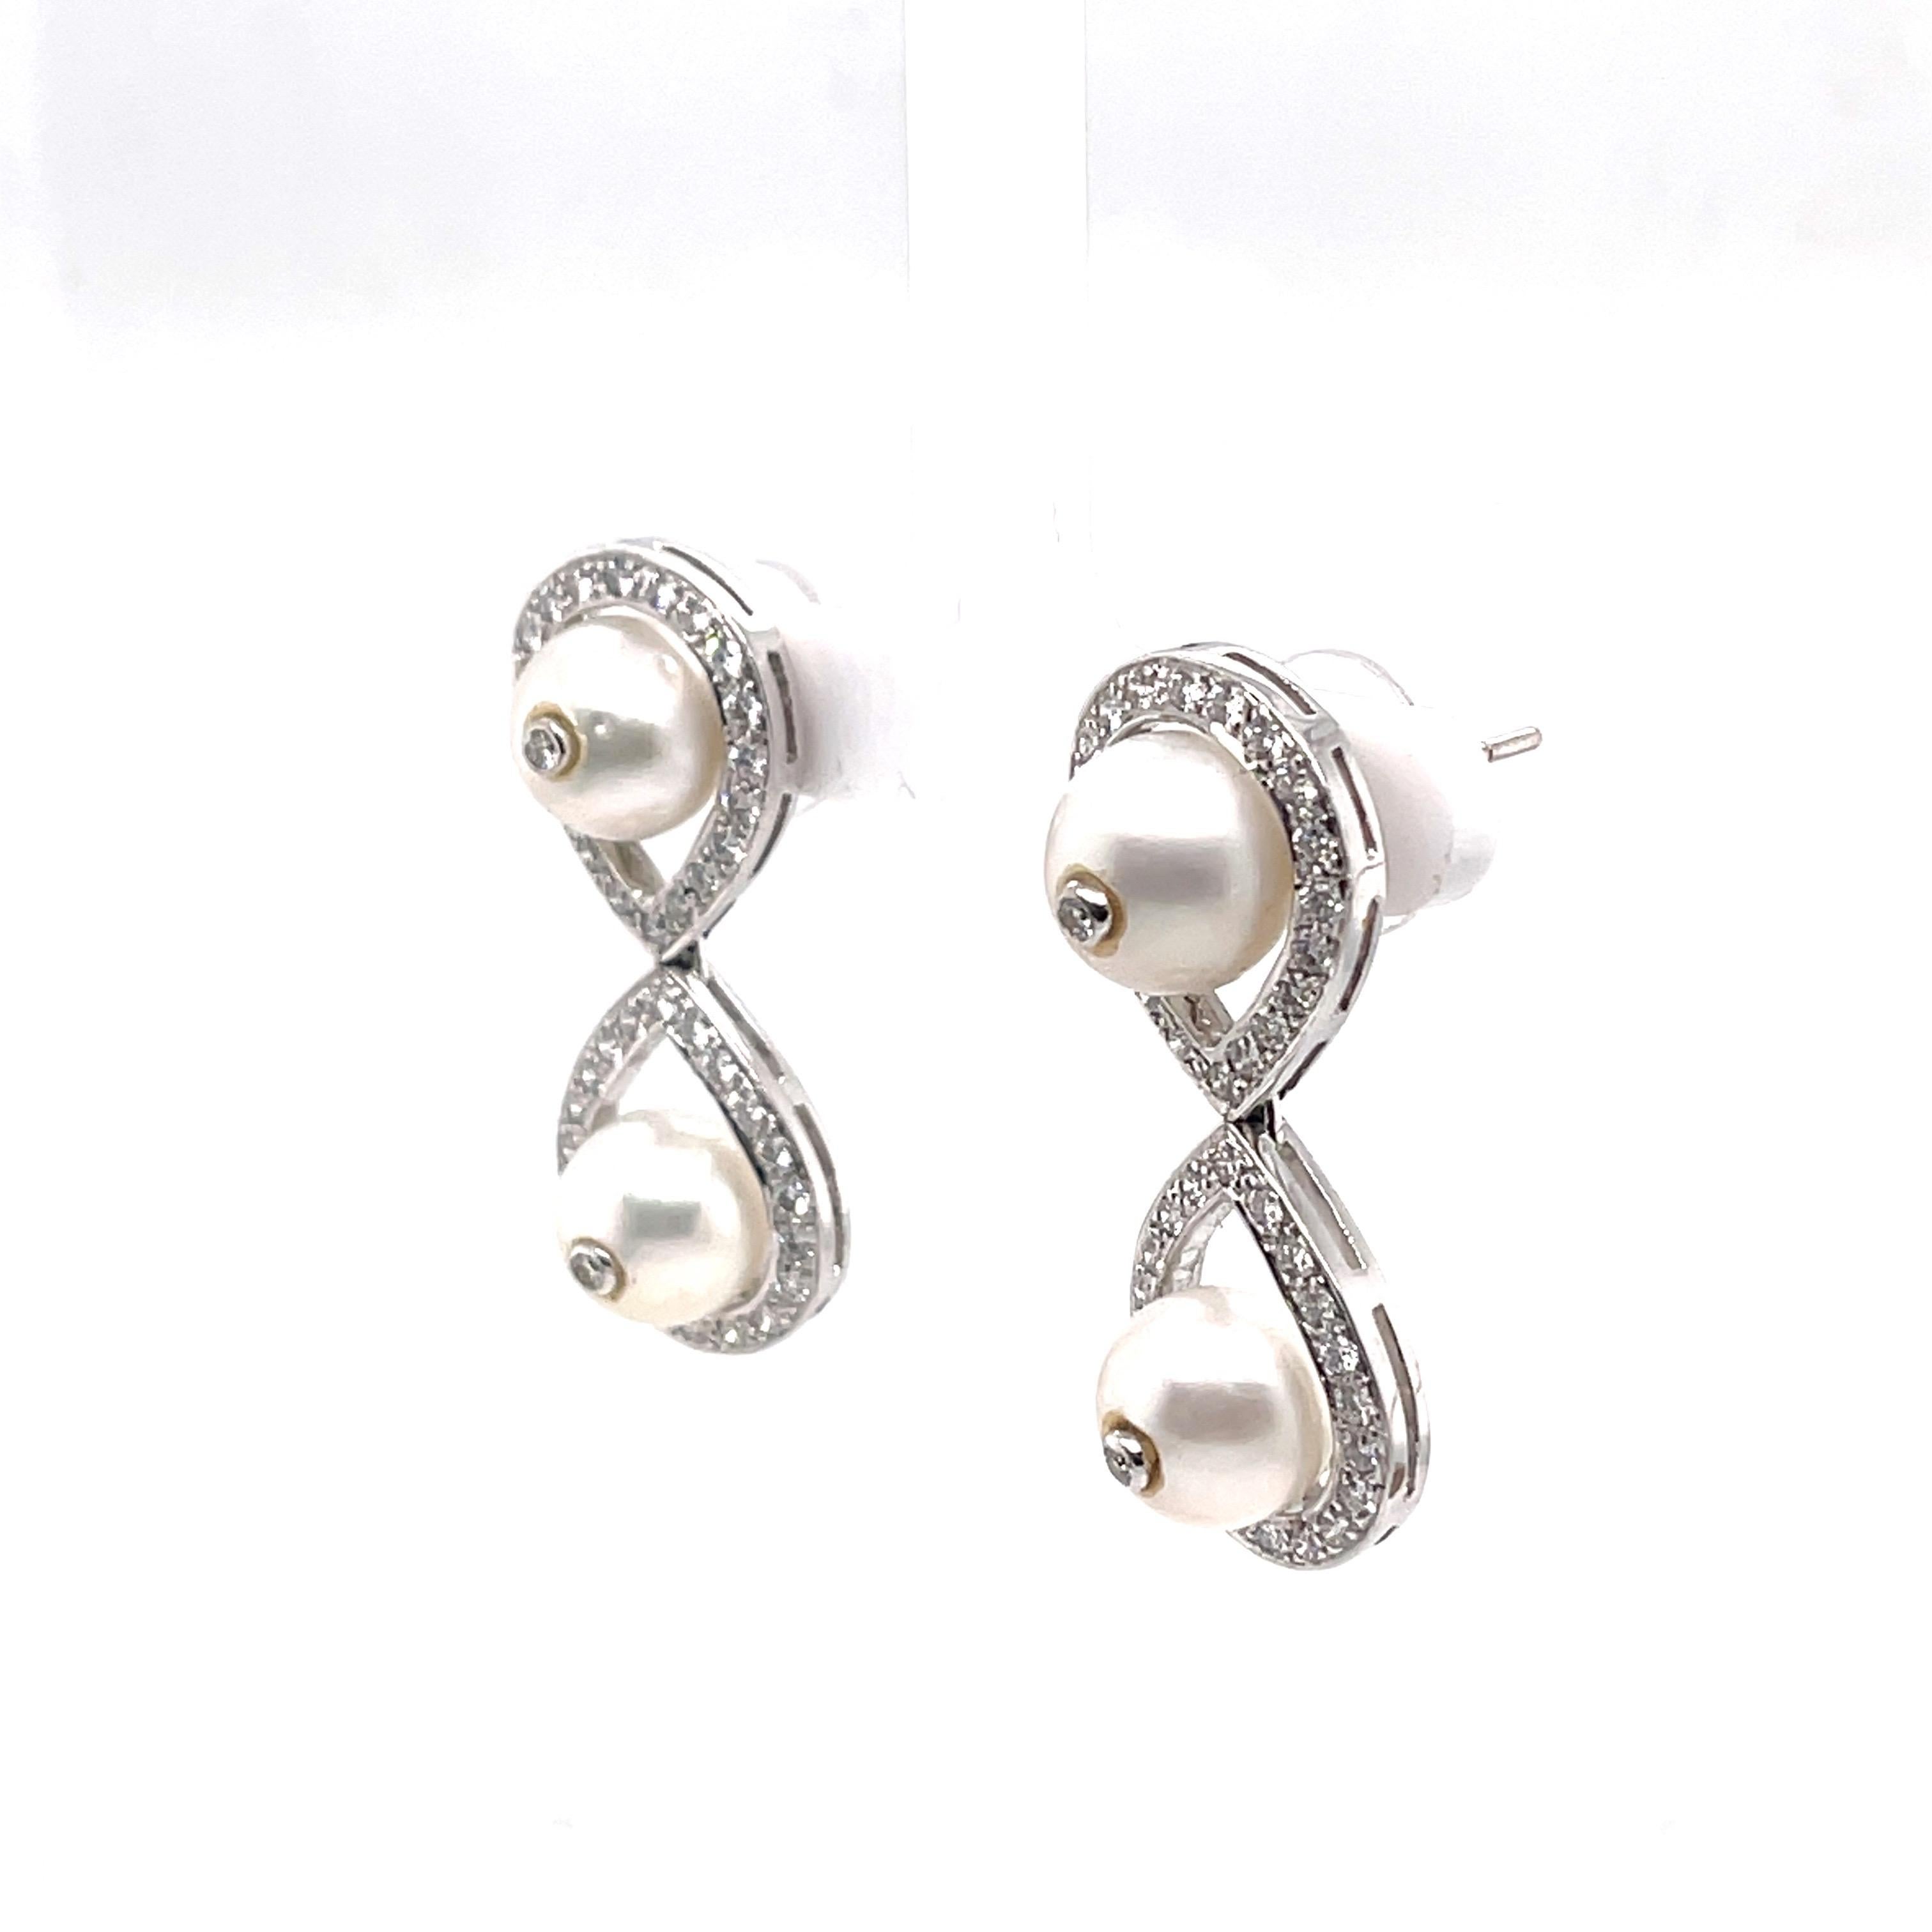 Post Back Earrings
18k White Gold
1.50 Carat White Diamonds